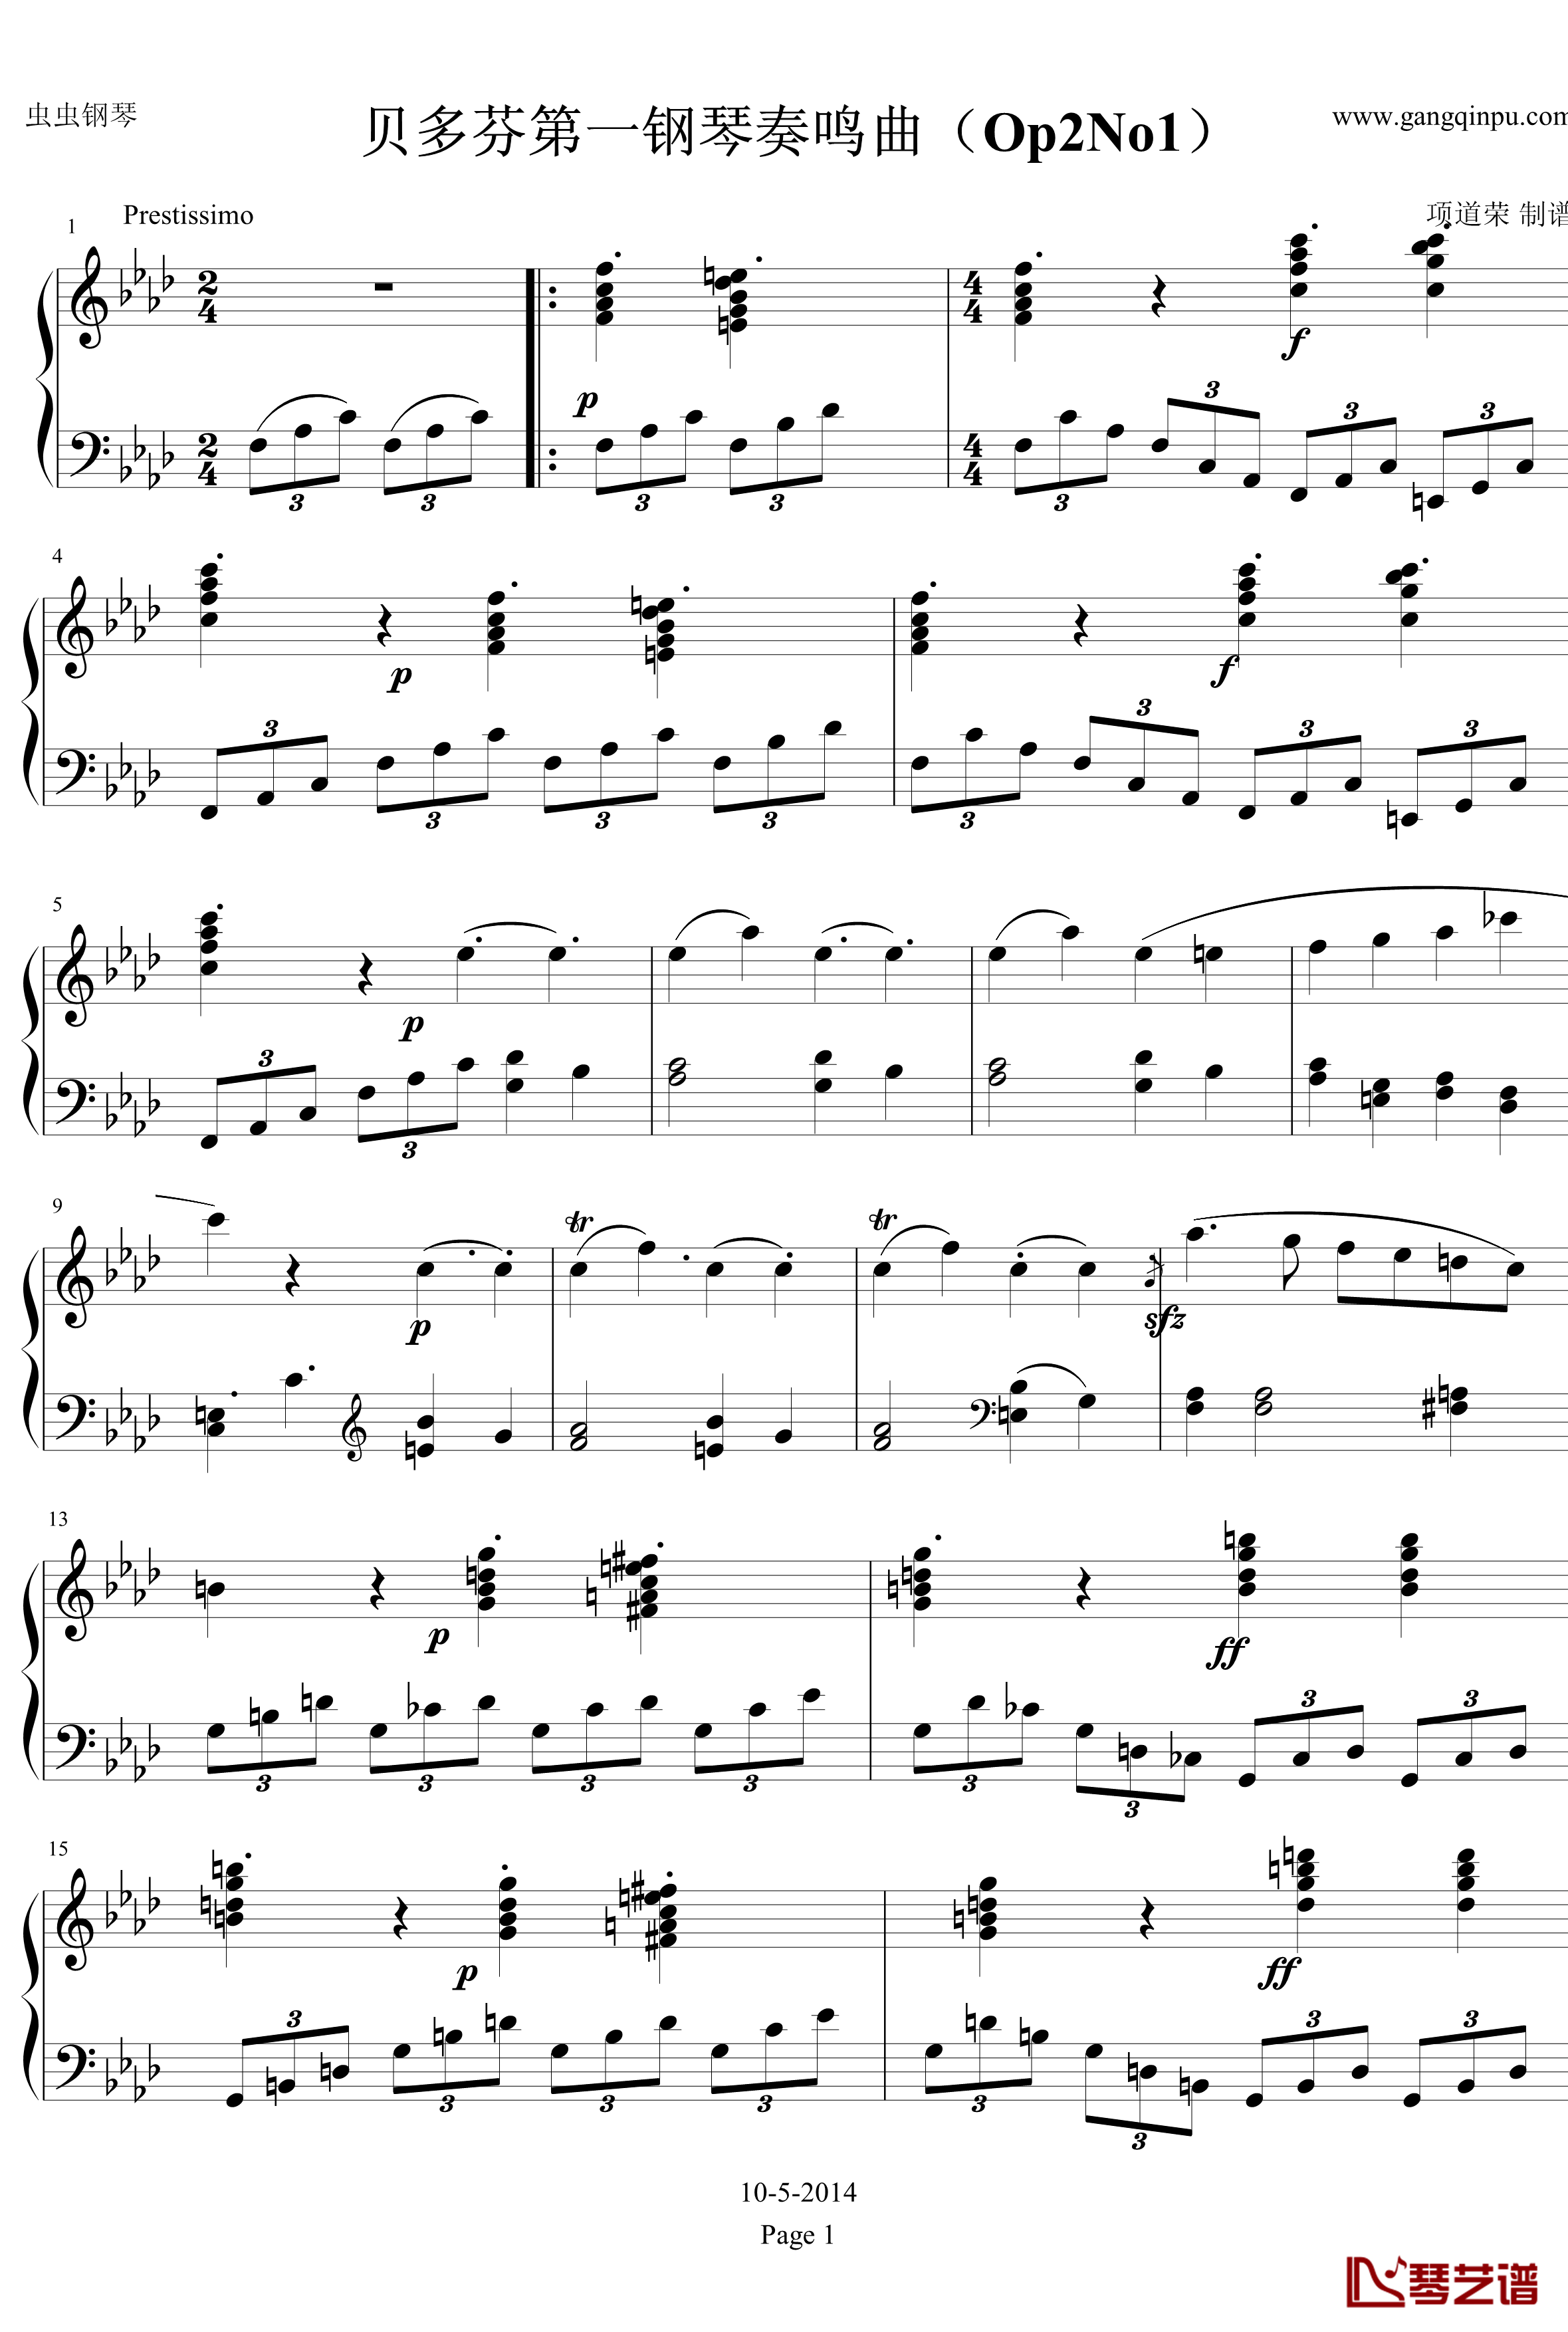 贝多芬第一钢琴奏鸣曲钢琴谱-作品2，第一号-贝多芬-beethoven1